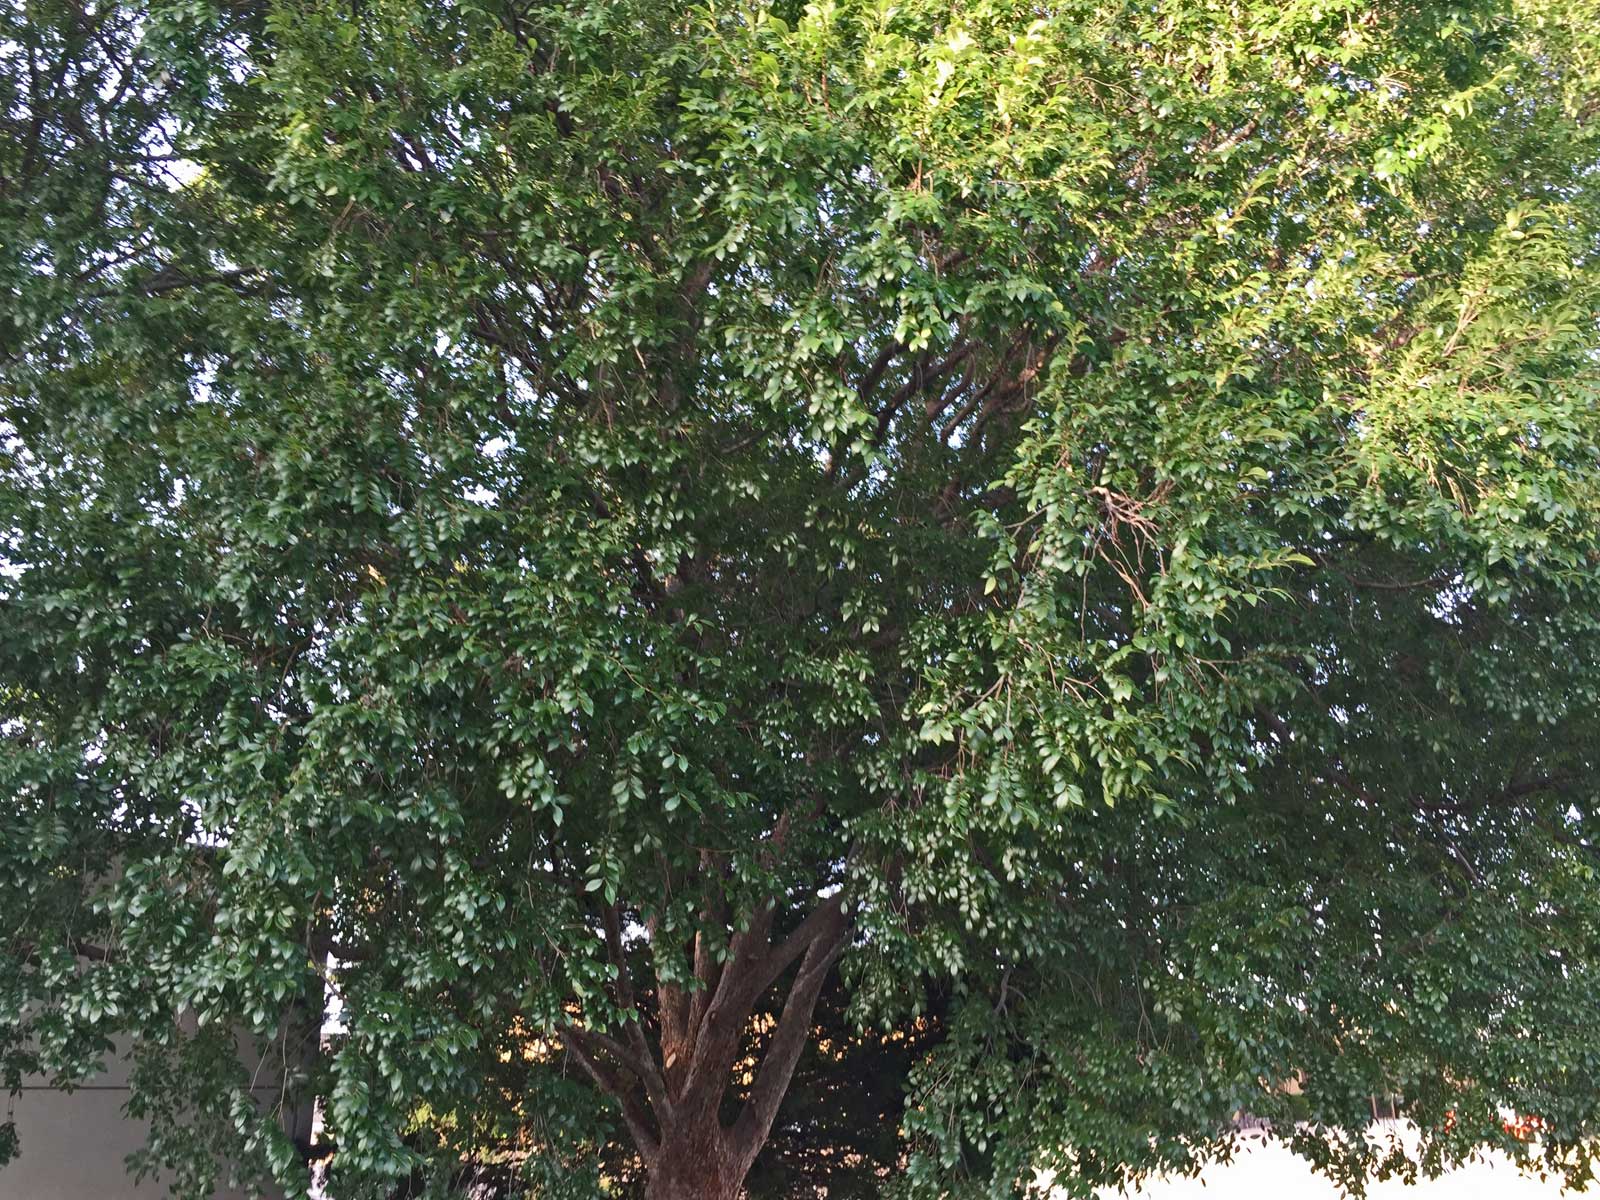 lacebark elm tree